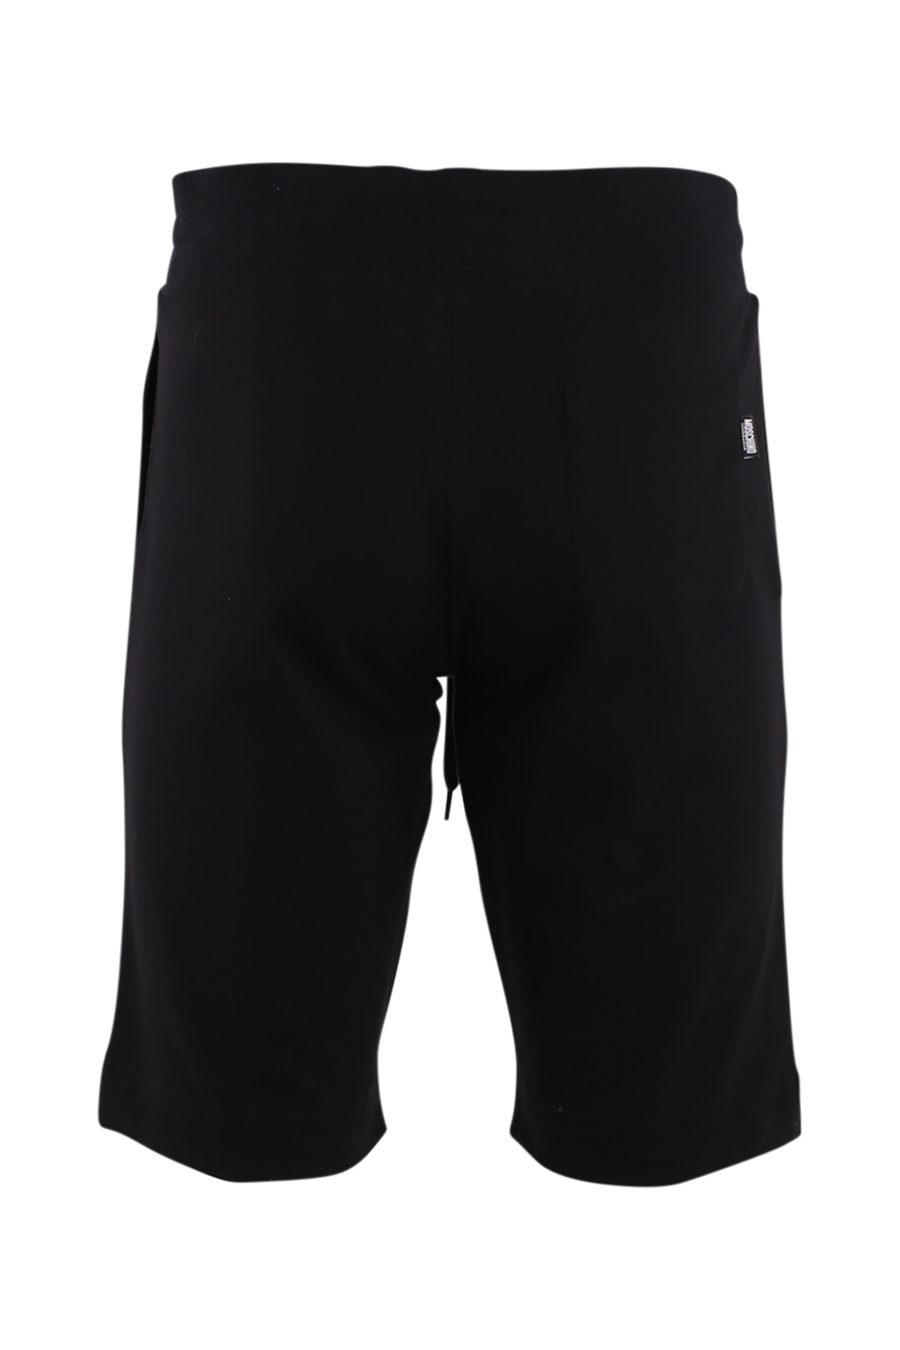 Pantalón corto negro con logo "underbear" - IMG 8831